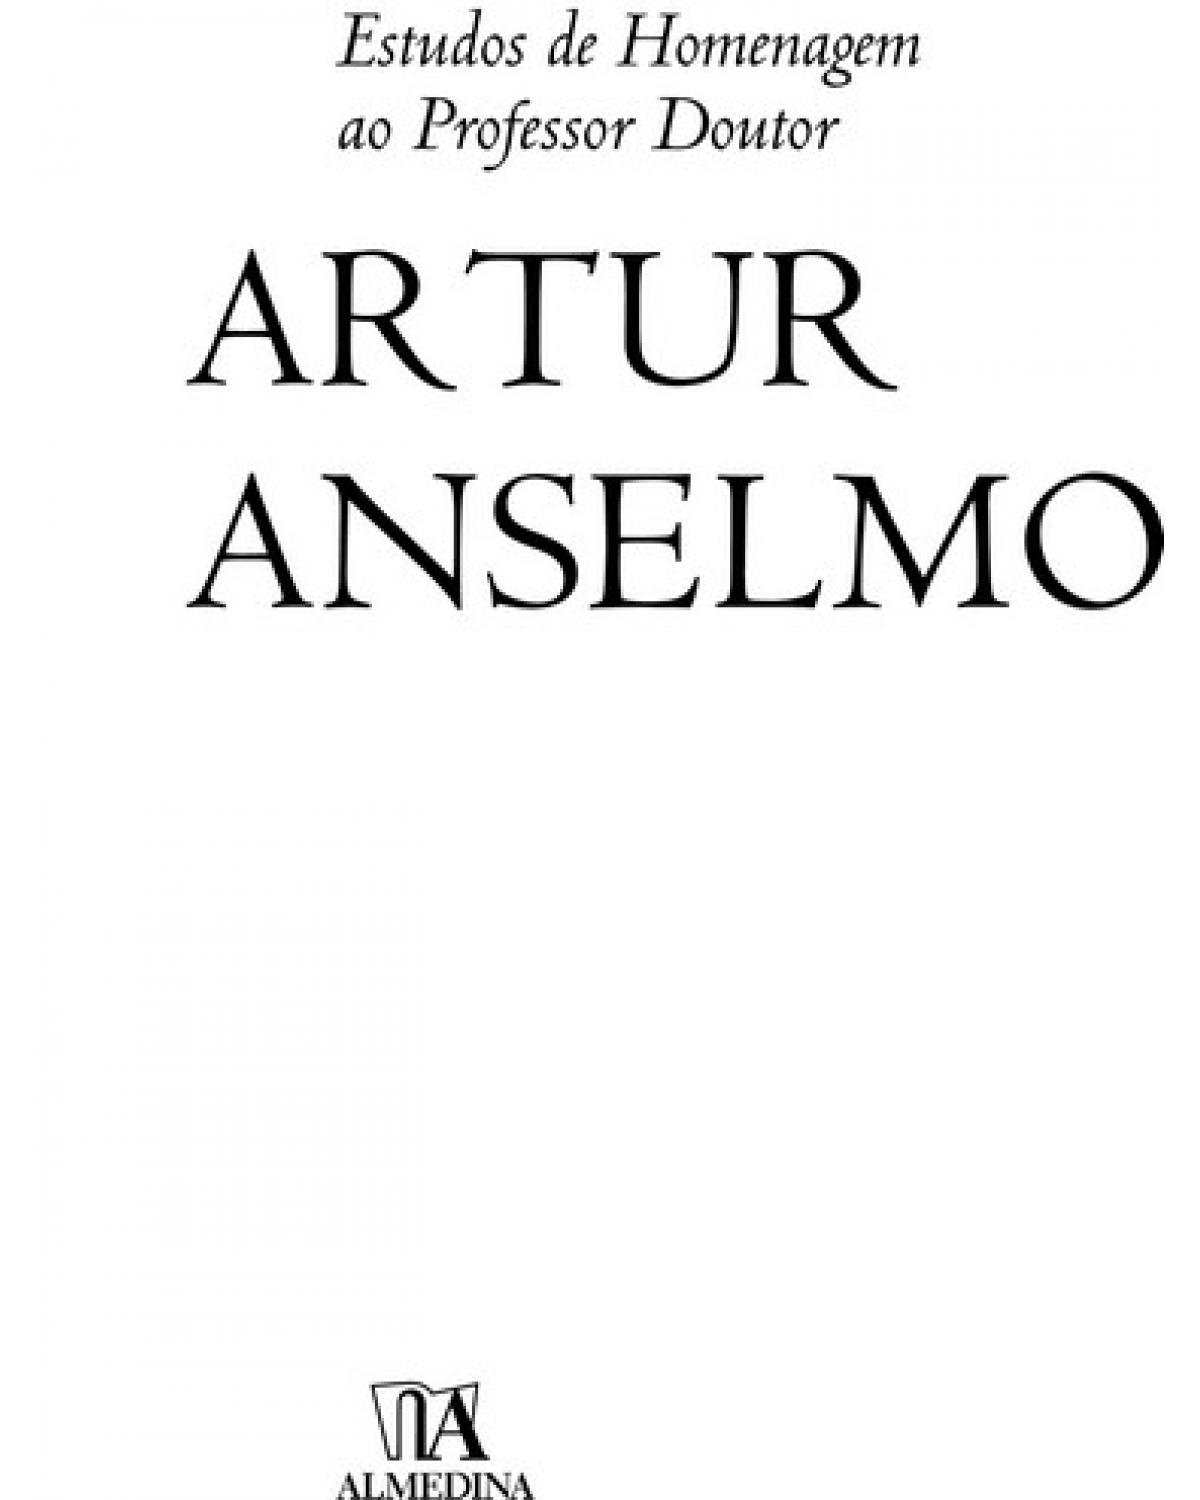 Estudos de homenagem ao professor Artur Anselmo - 1ª Edição | 2008